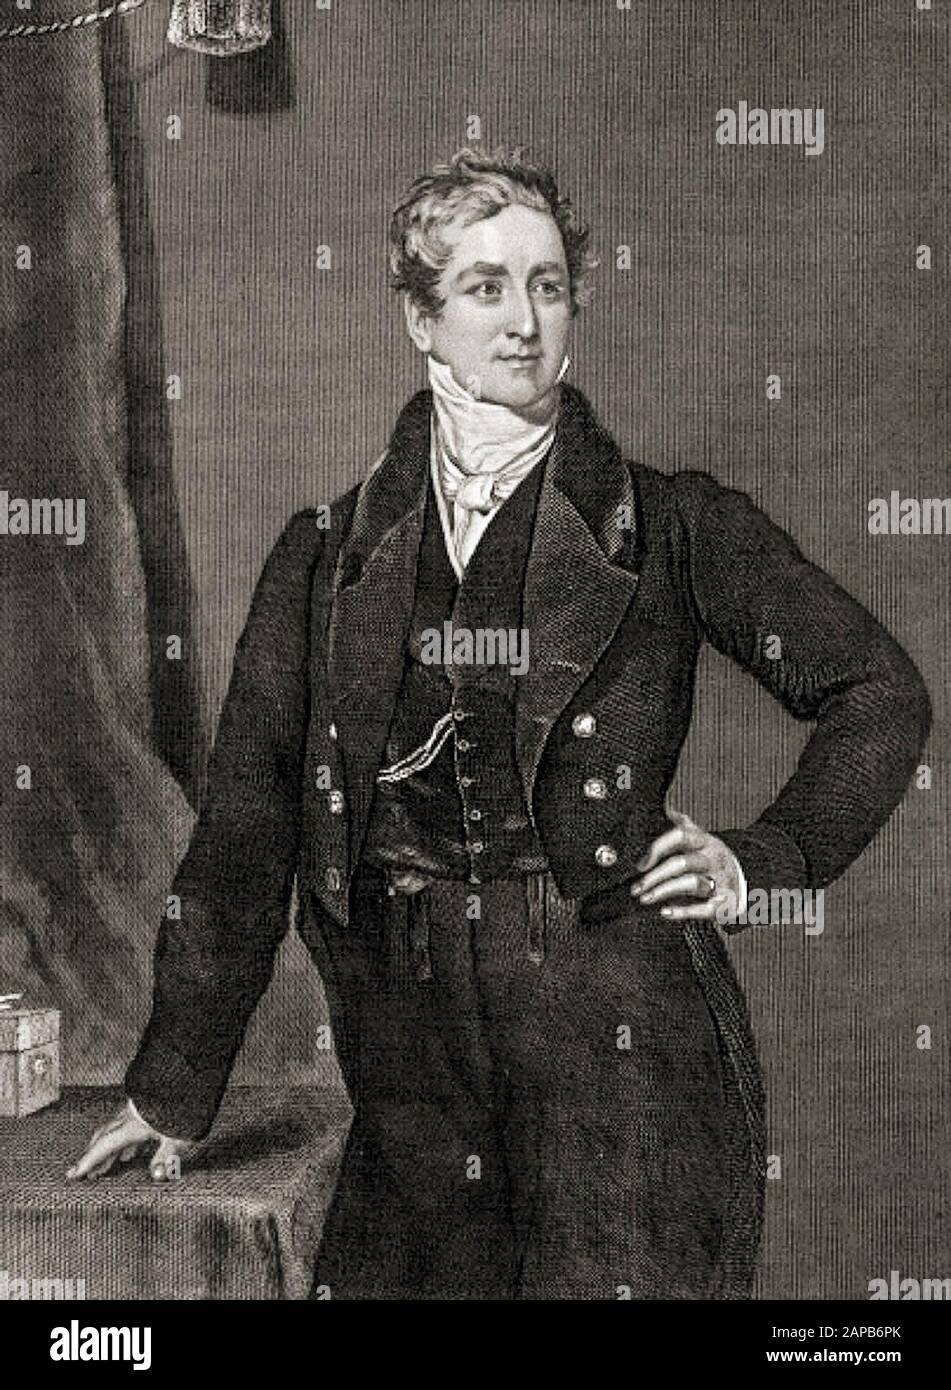 Sir Robert Peel, (1788-1850), 2ème Baronet, ancien premier ministre du Royaume-Uni, gravure de portraits, 1873 Banque D'Images